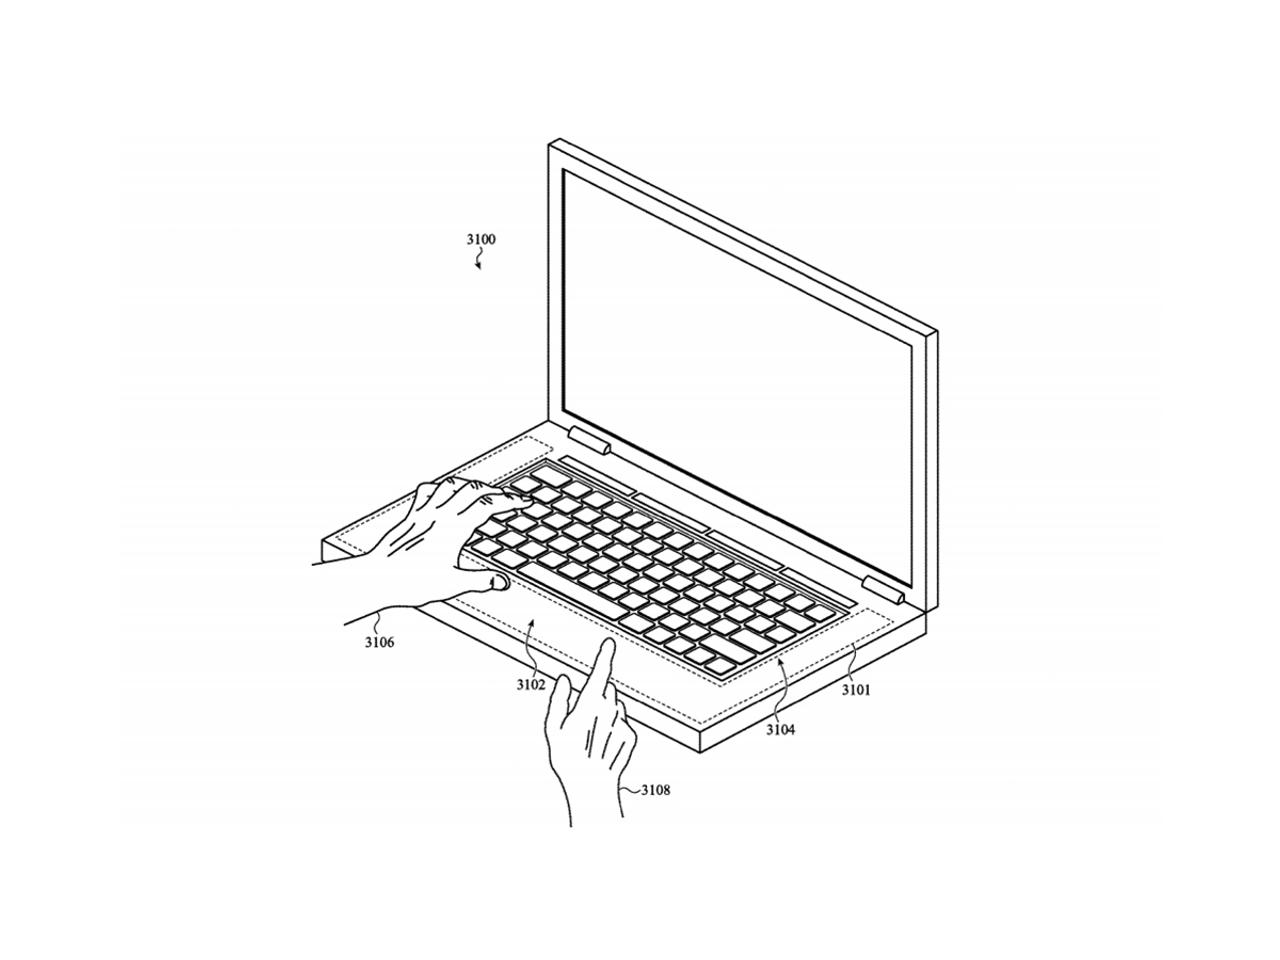 特許から読み解く、Appleが考える未来のキーボード